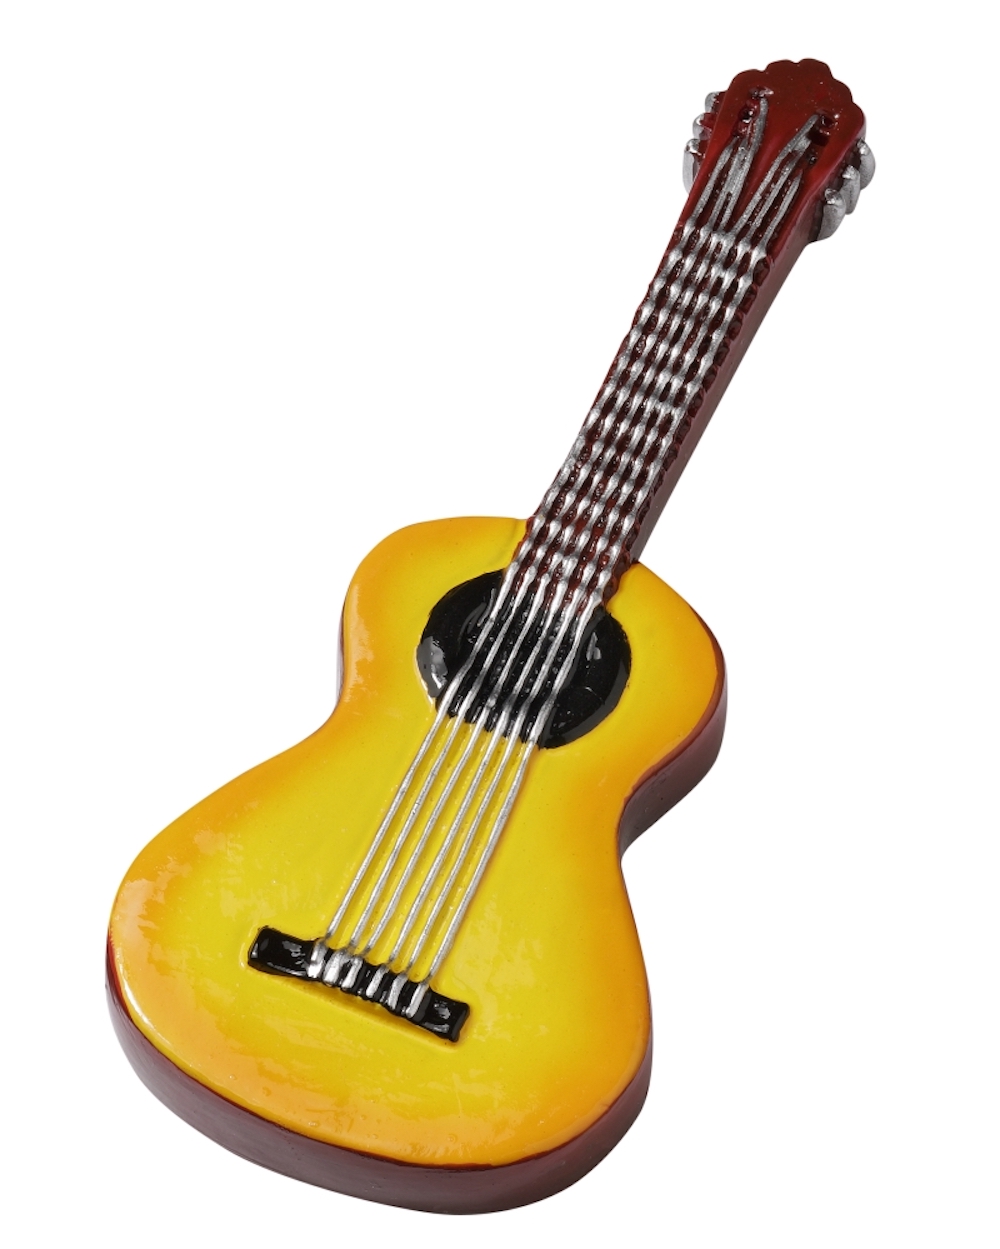 Miniatur Gitarre, 9,5cm, Dekofigur, Polyresin, 1 Stück